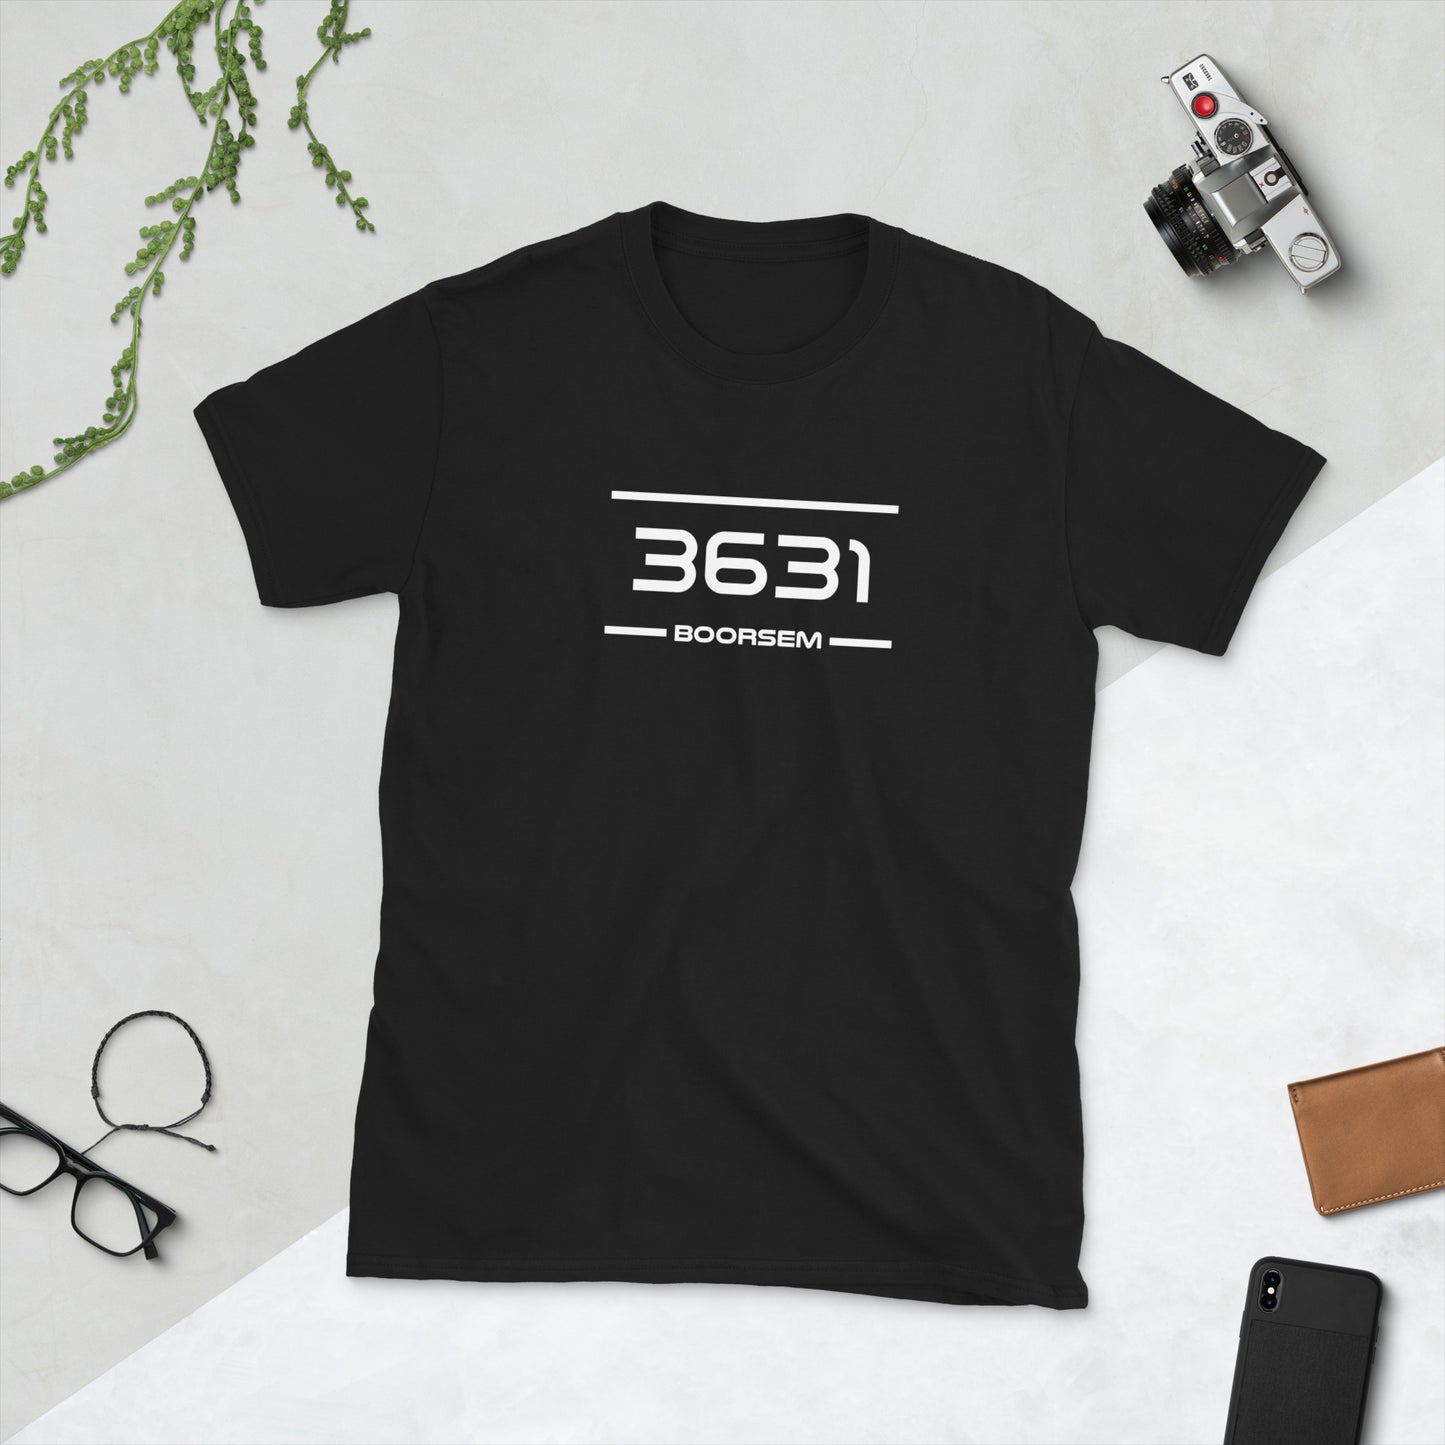 Tshirt - 3631 - Boorsem